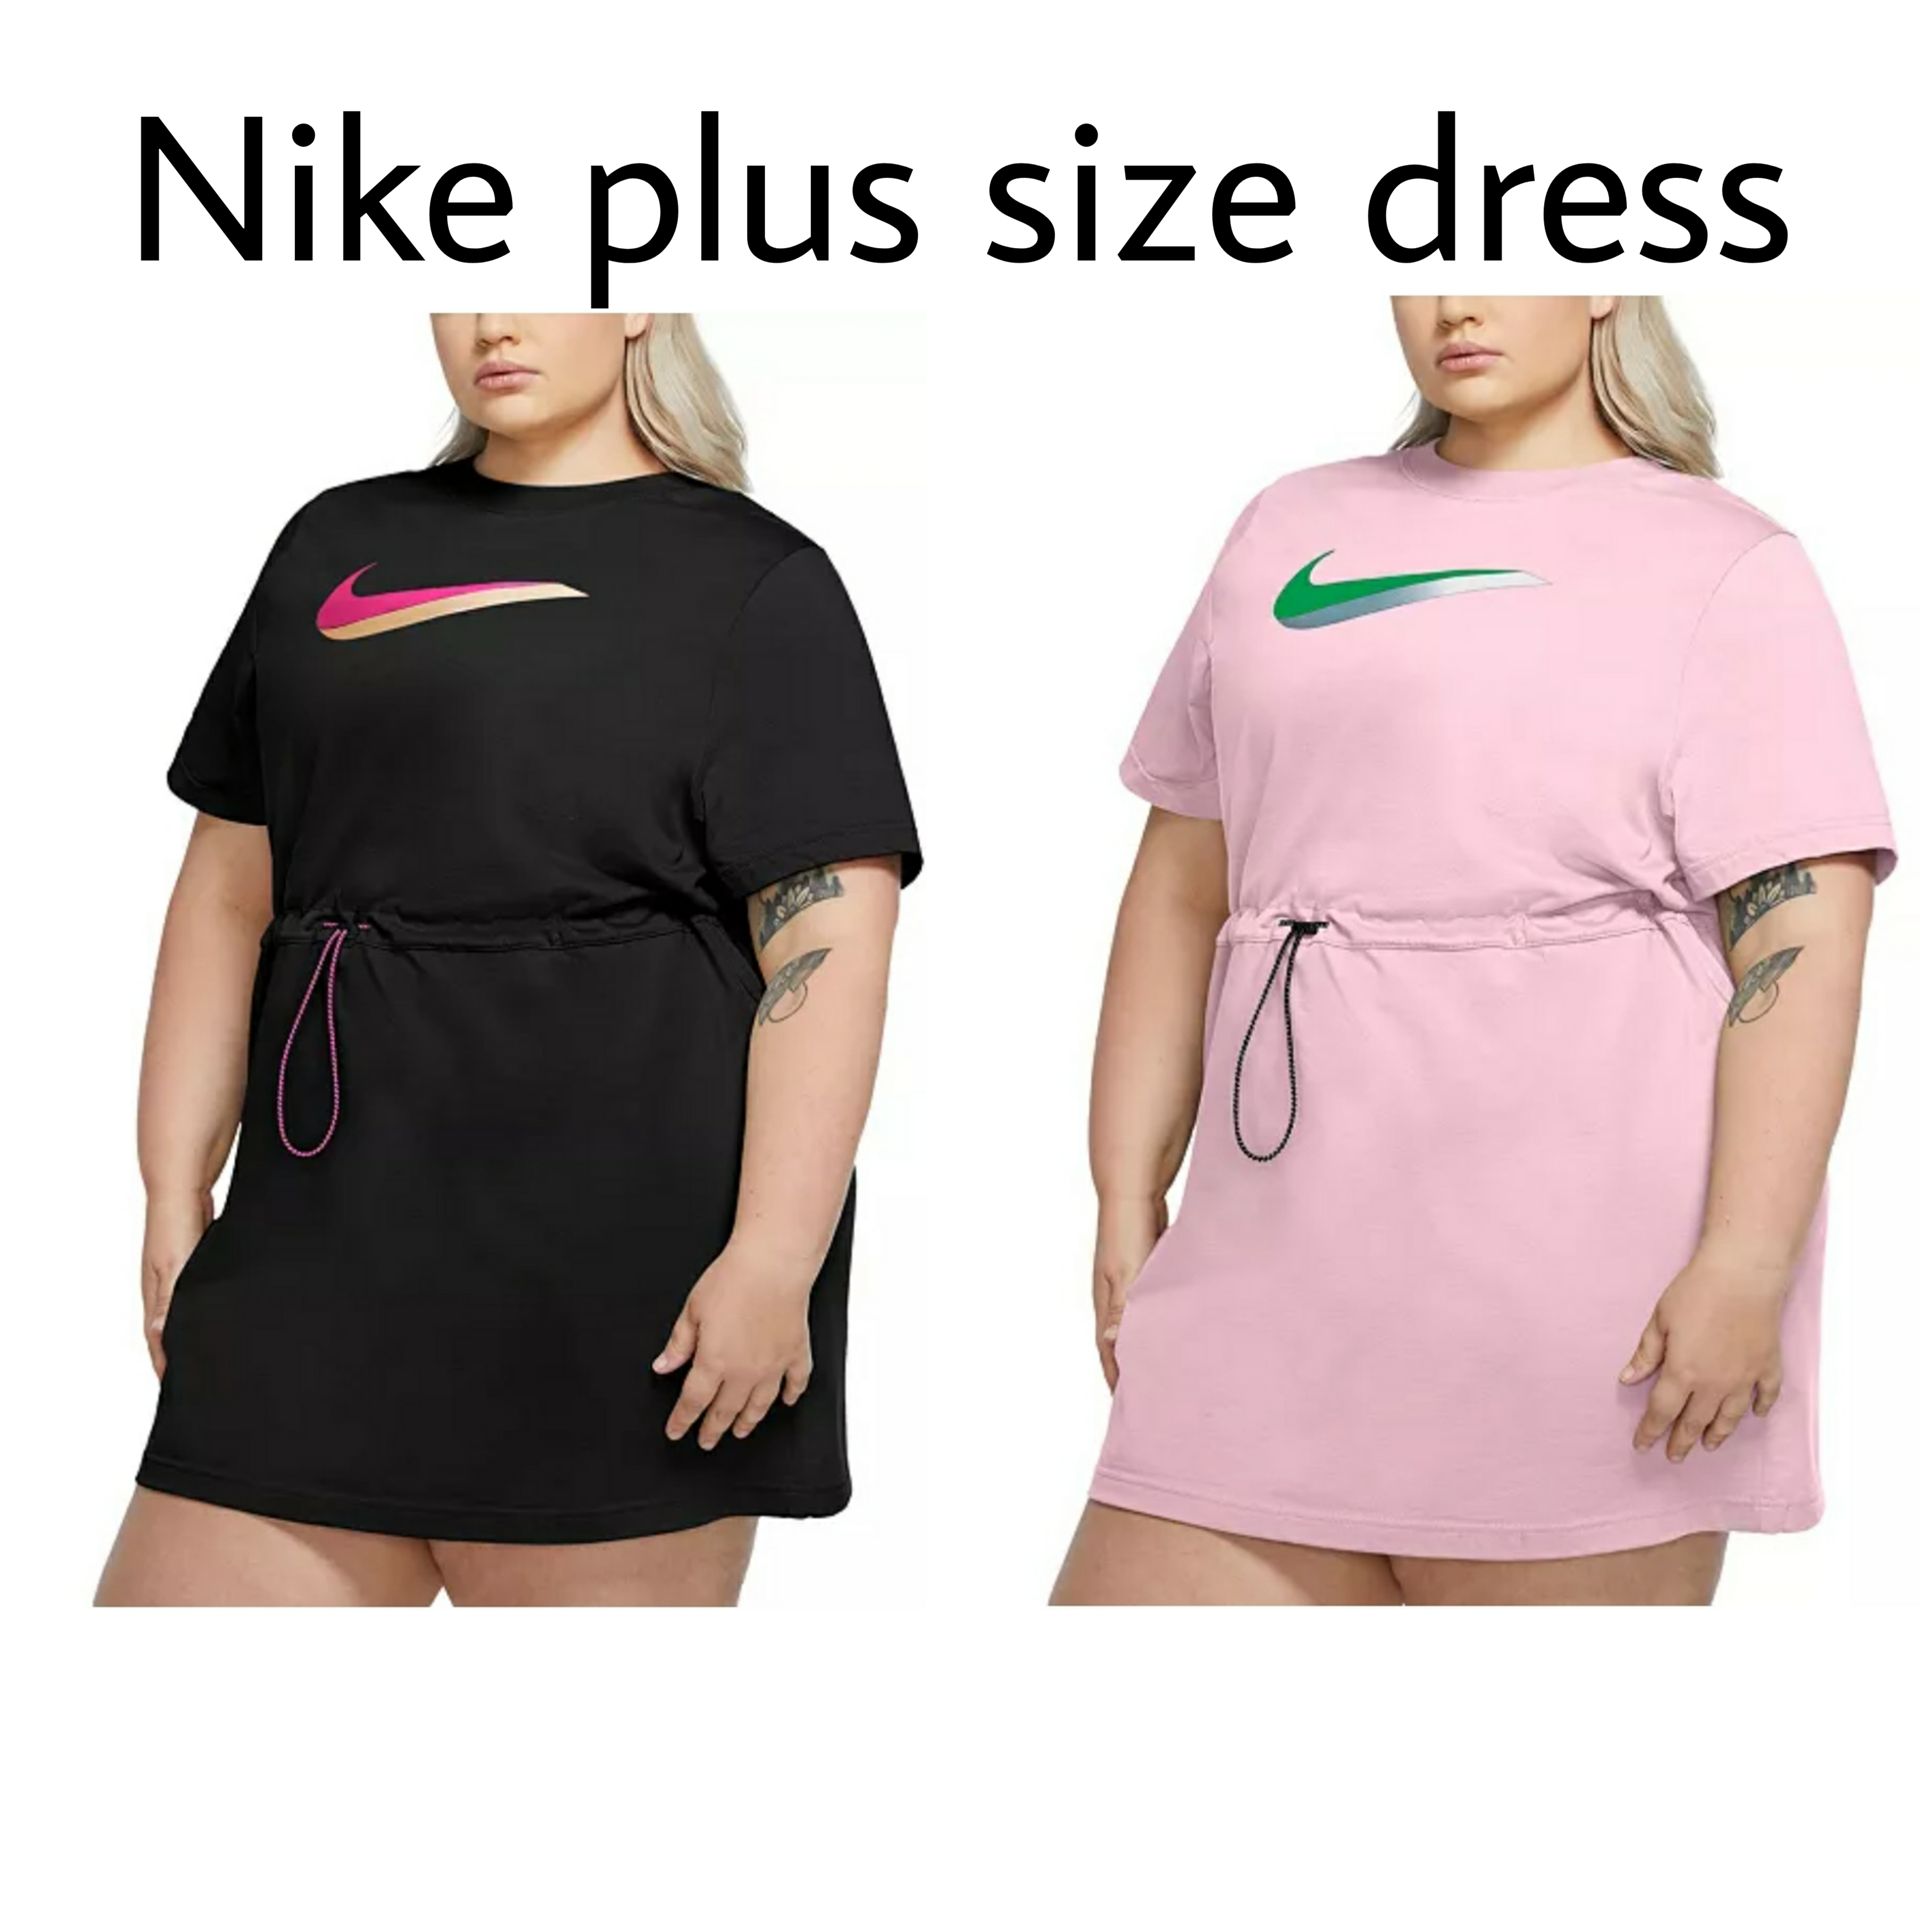 Nike plus size dress - Macys Style Crew